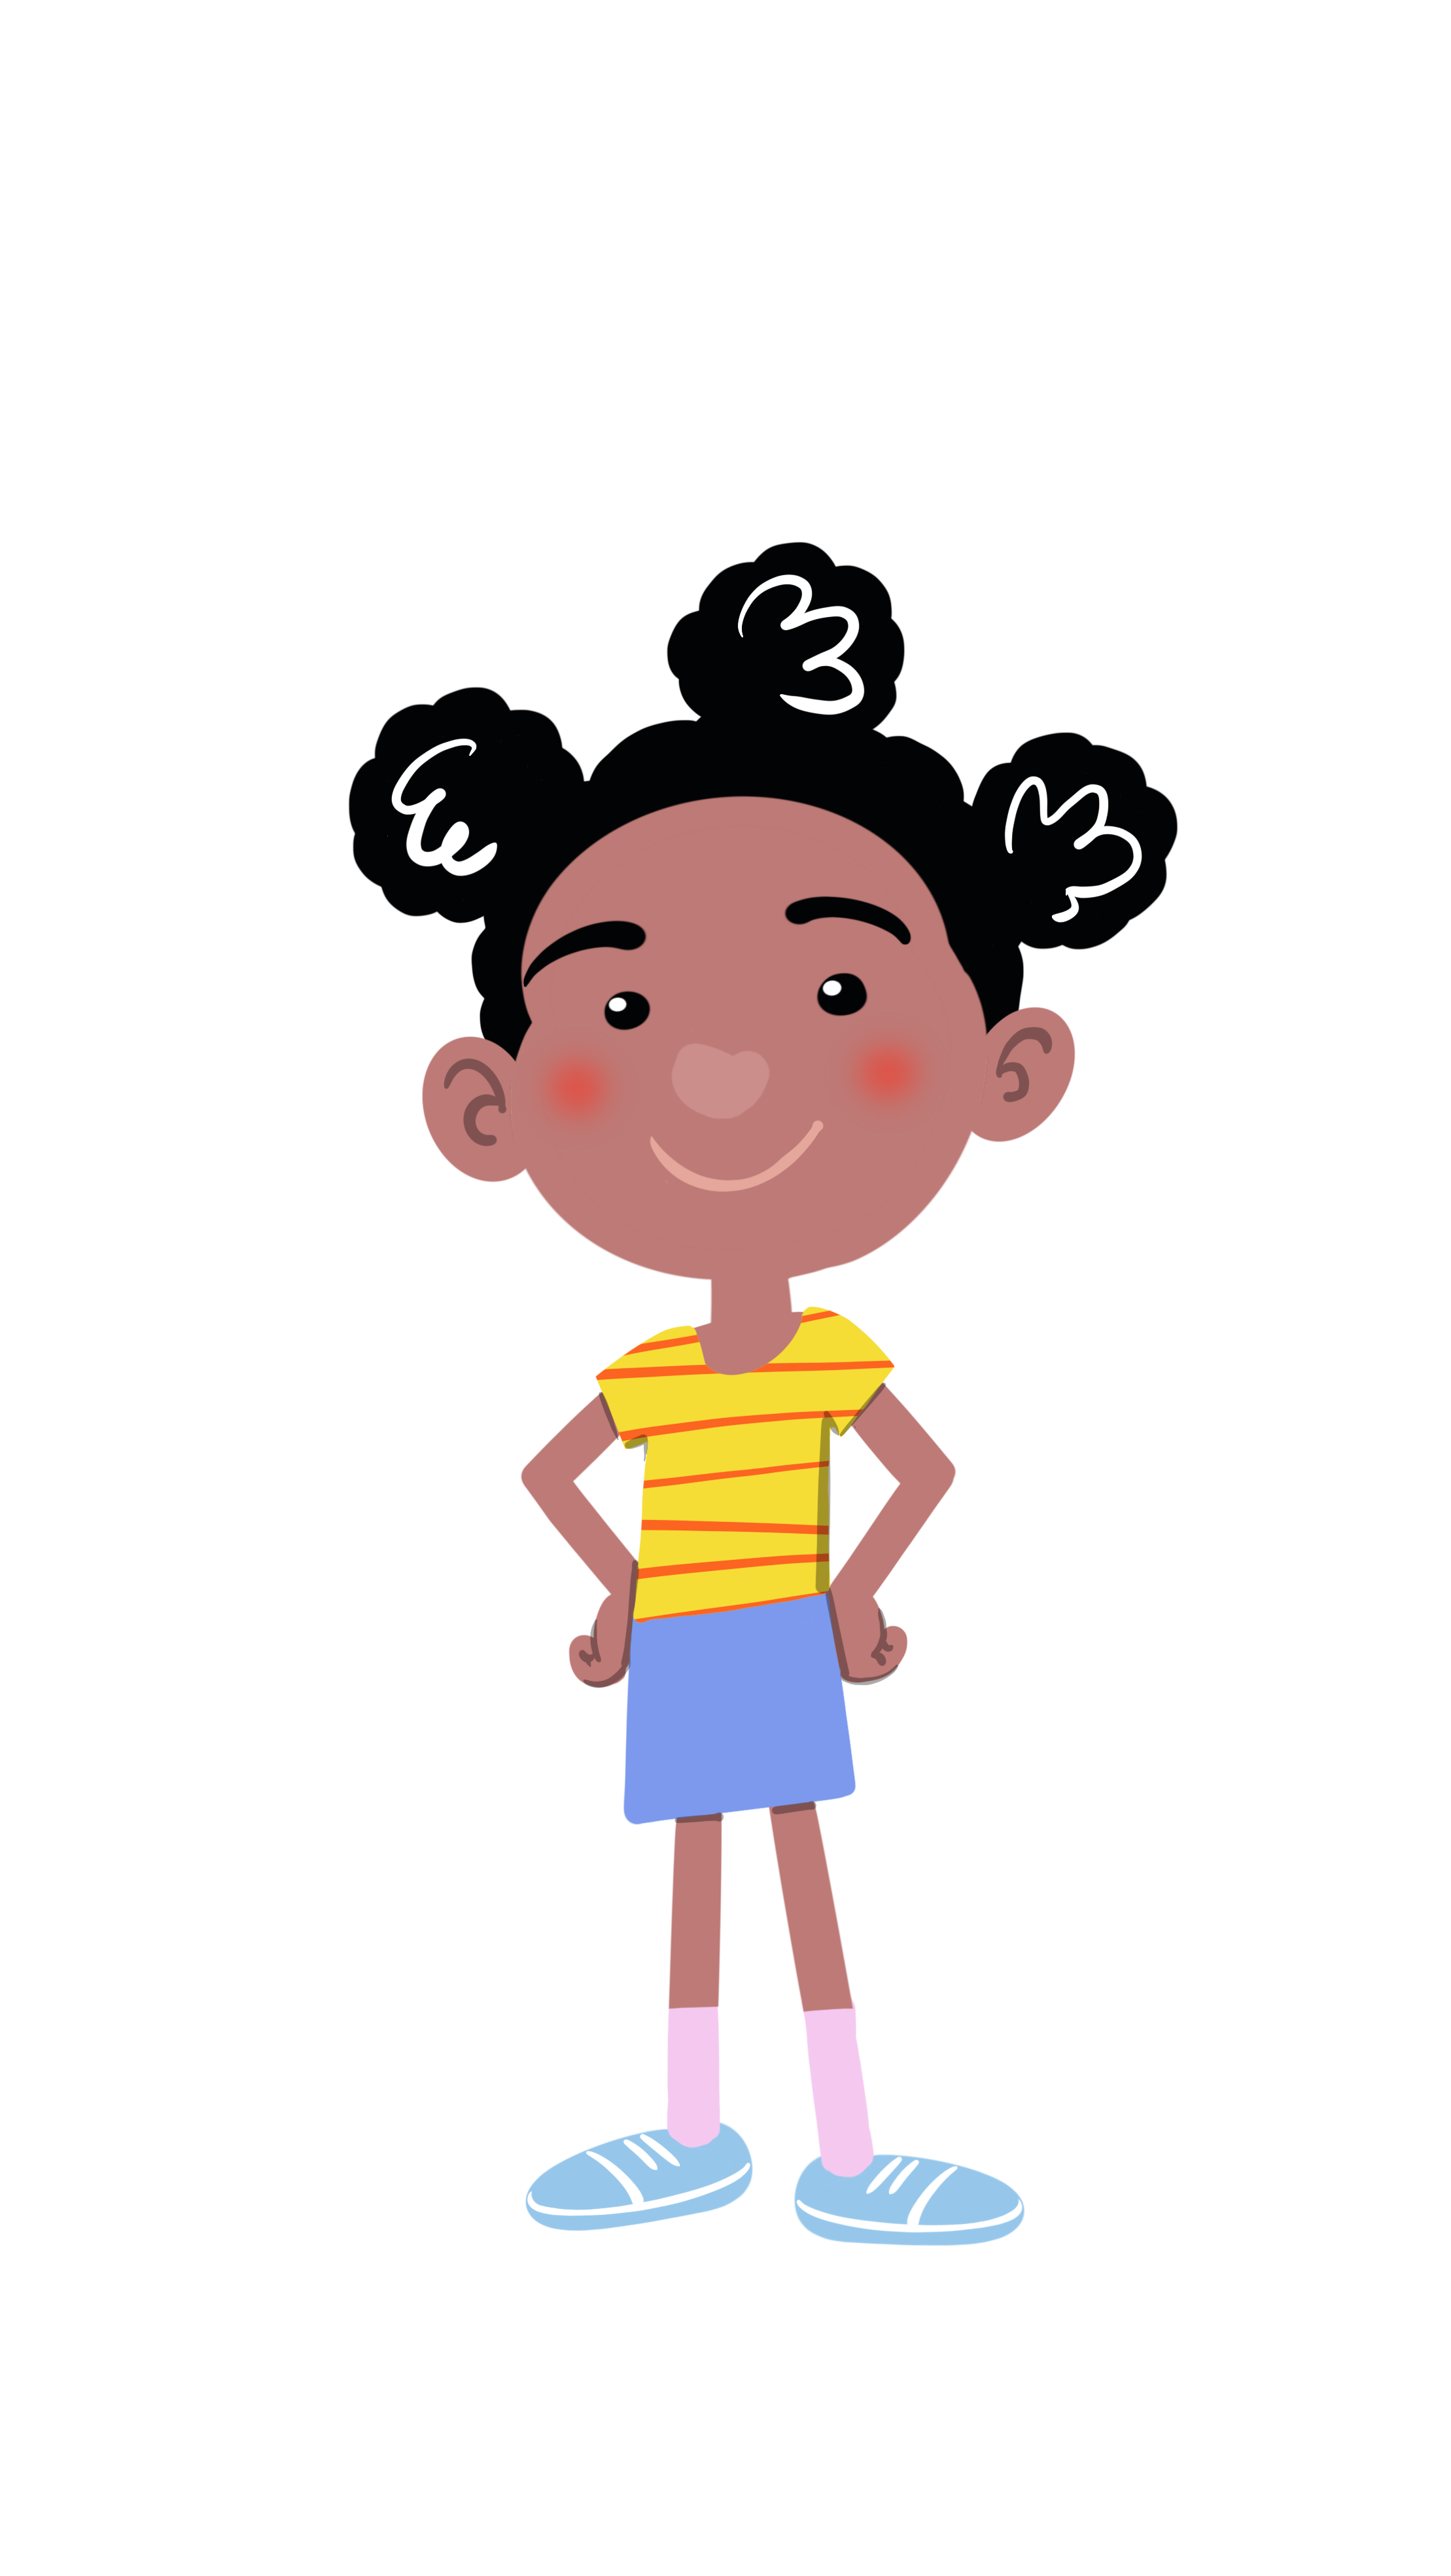 Aby je nasmiješena tamnoputa djevojčica crne kovrčave kose, složene u tri punđice te odjevena u žutu majicu s tankim crvenim, horizontalnim prugama, svijetloplavu suknjicu, roza čarapice i svijetloplave tenisice.